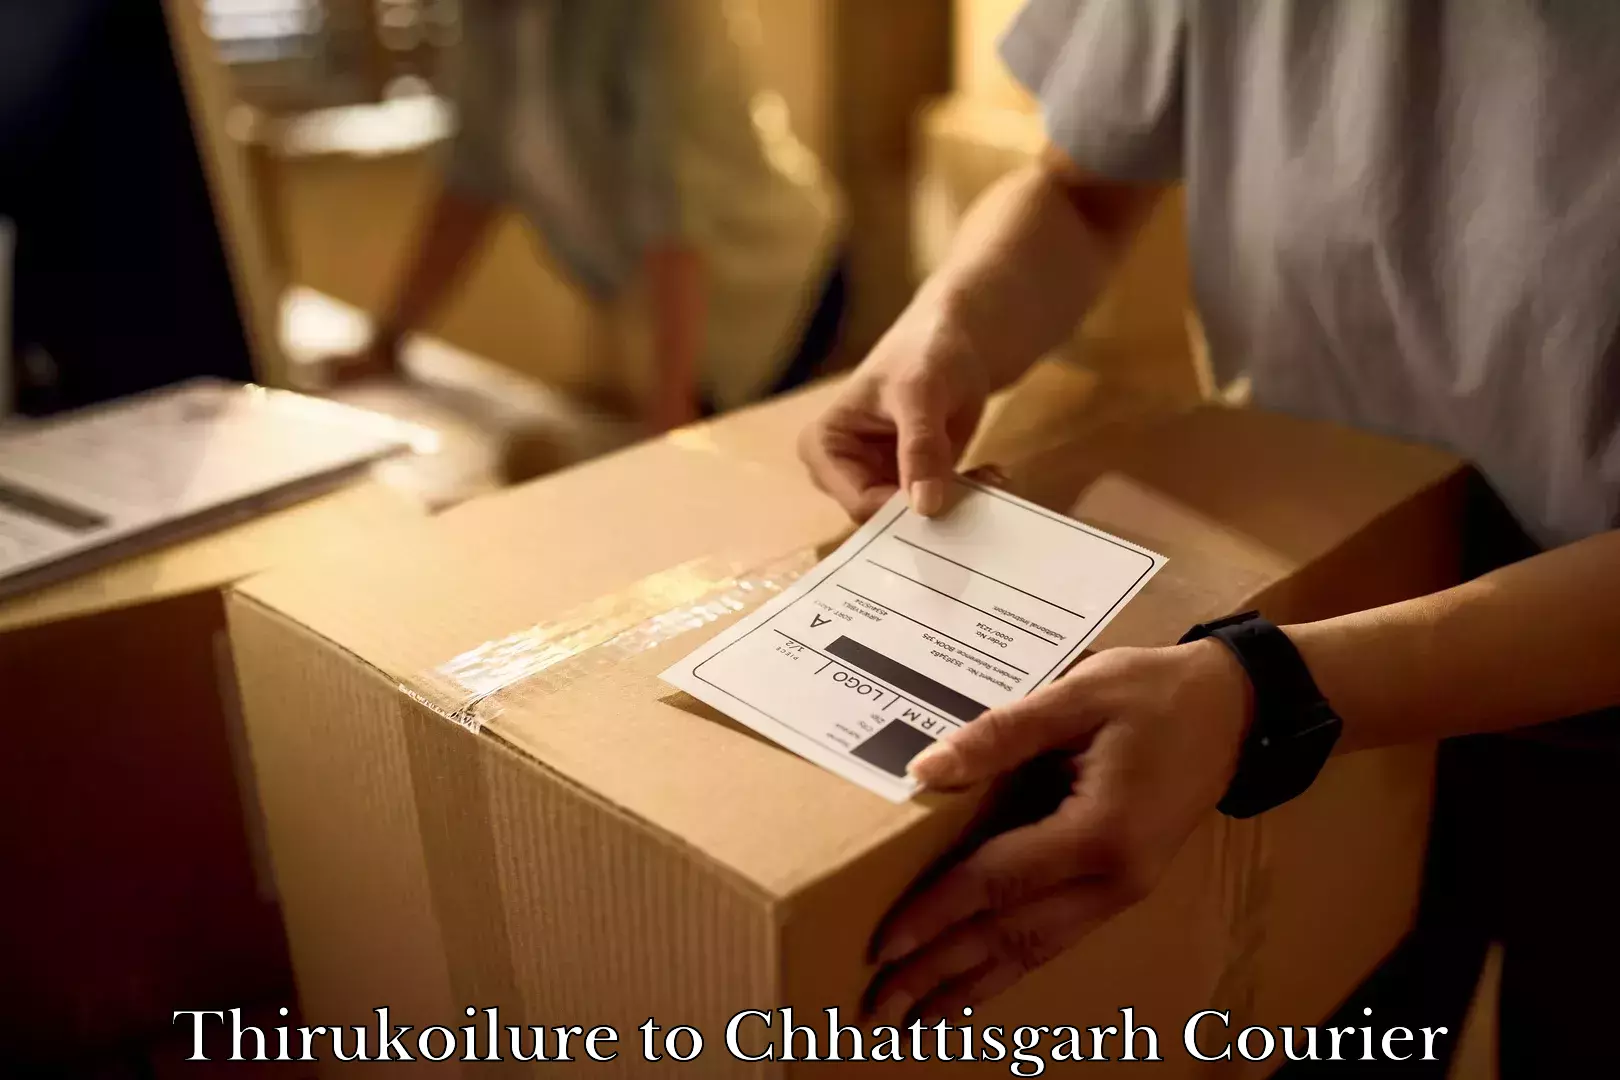 Home shifting experts Thirukoilure to Raigarh Chhattisgarh